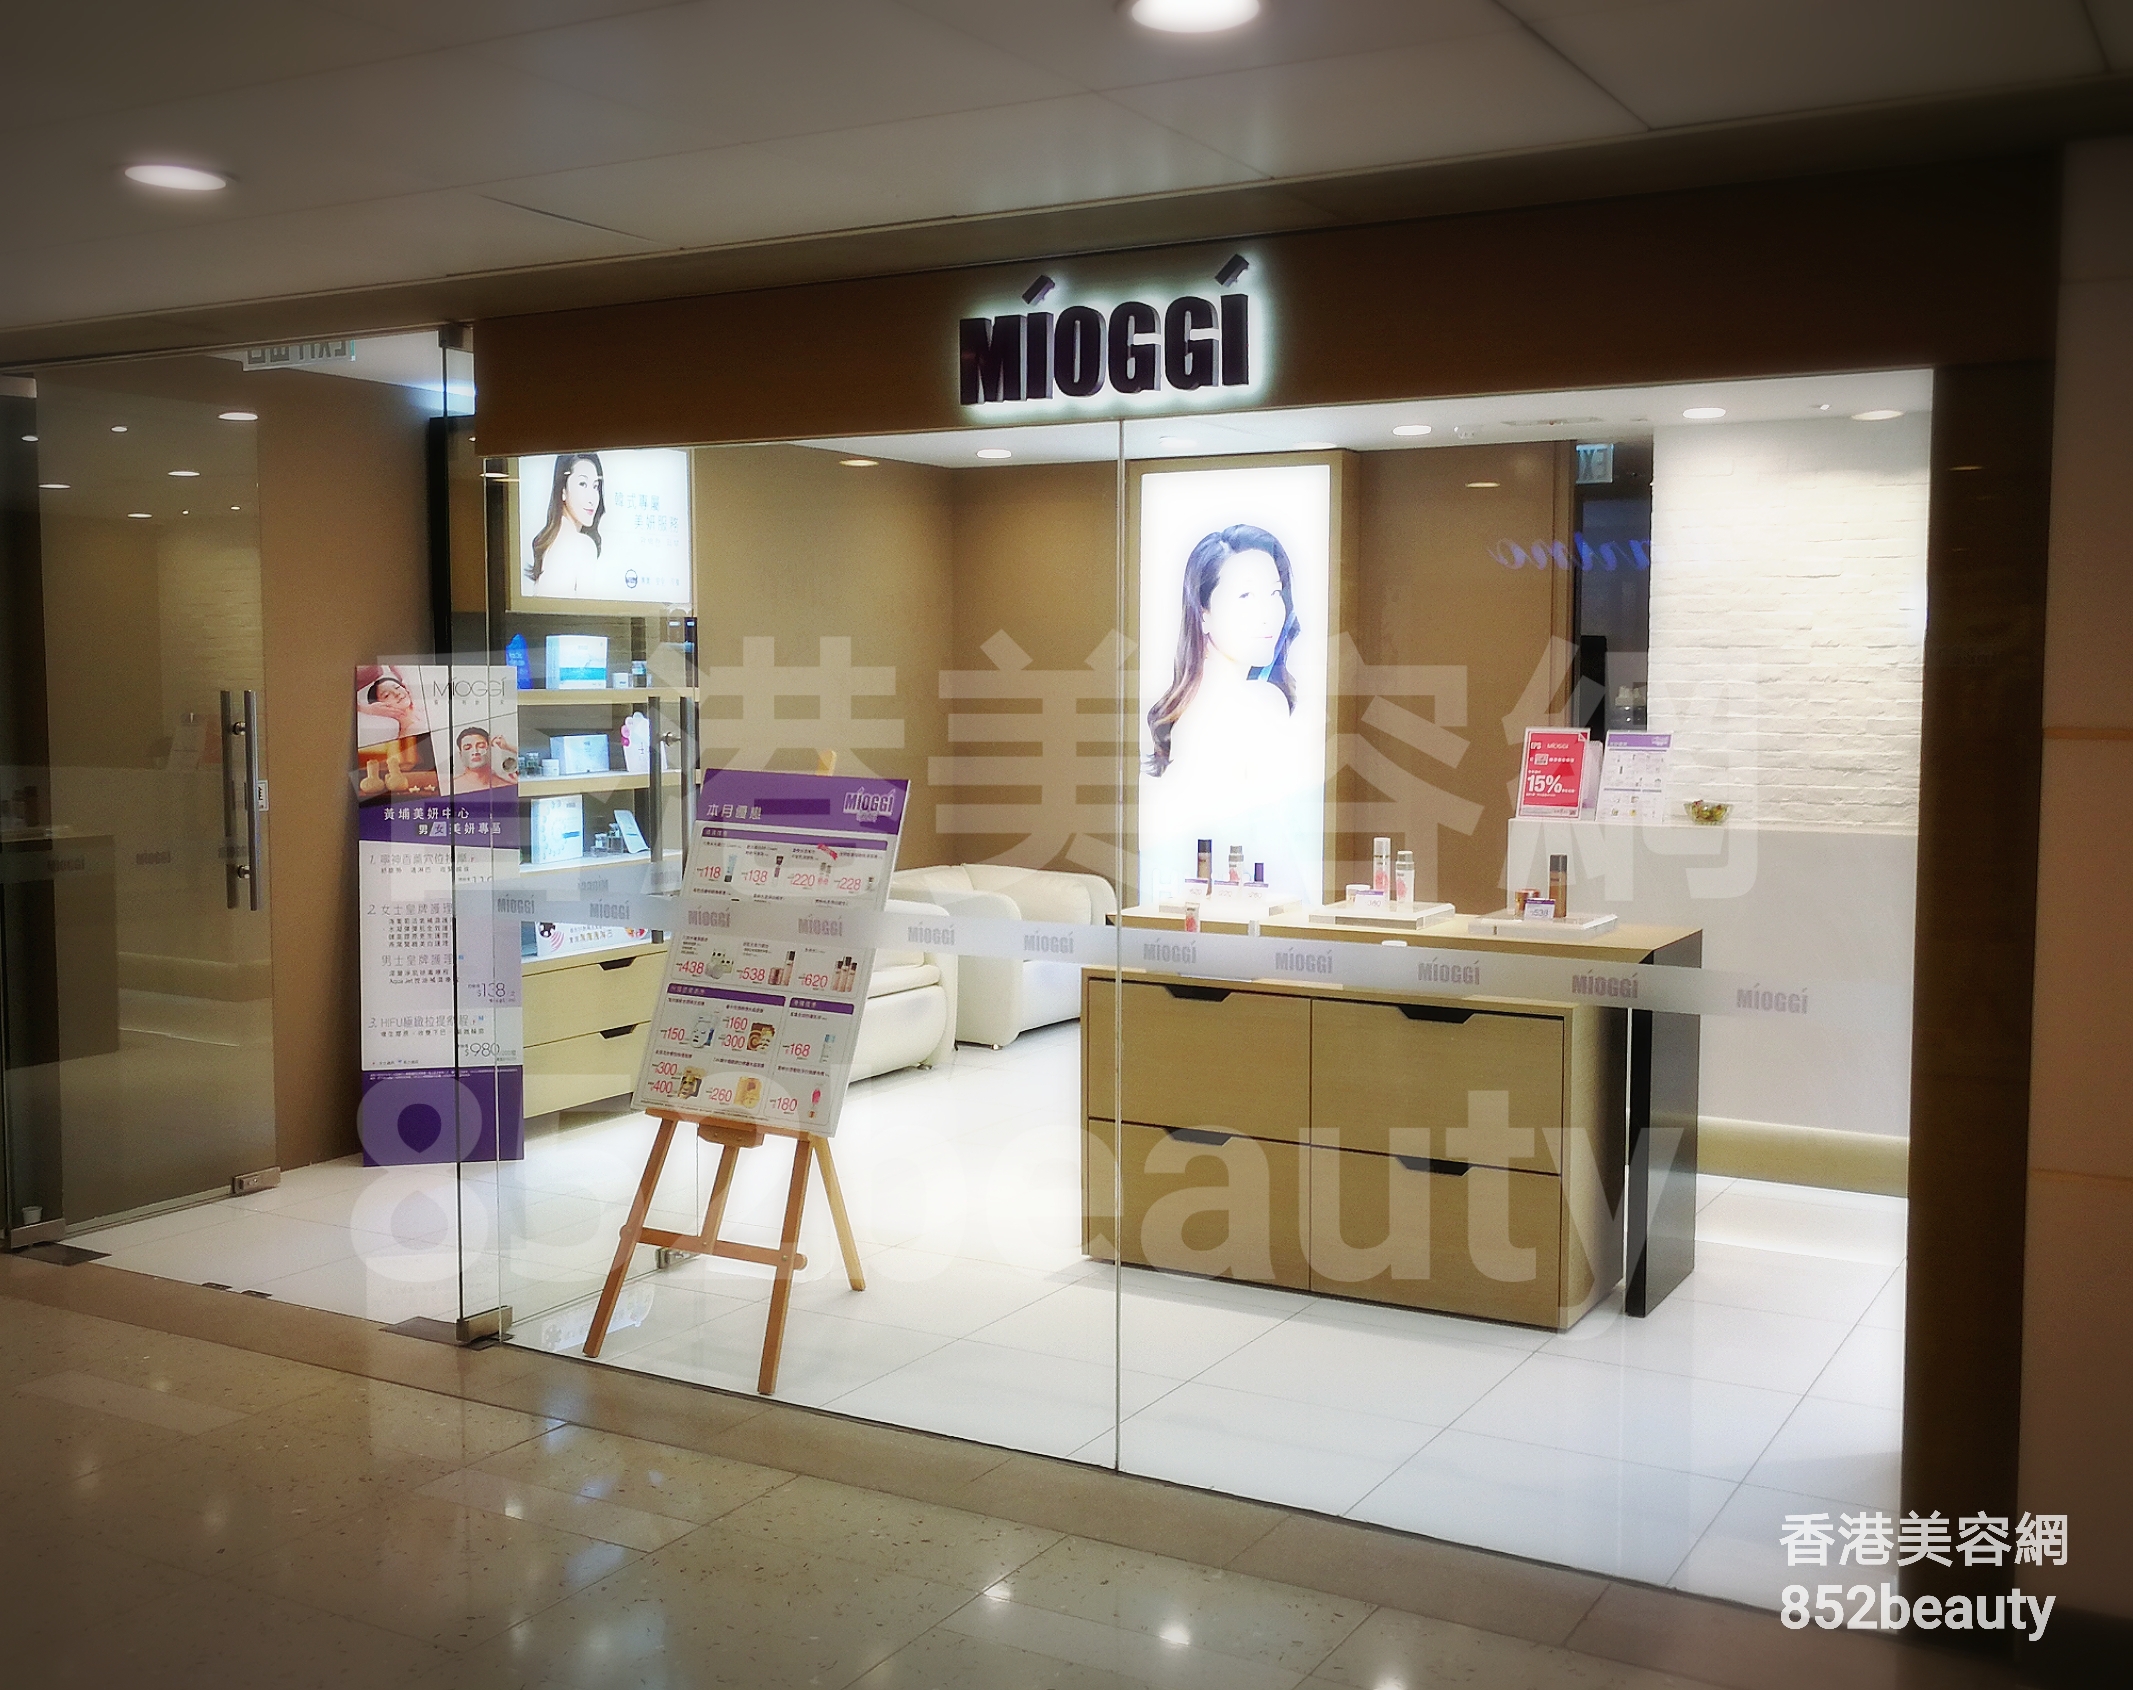 香港美容網 Hong Kong Beauty Salon 美容院 / 美容師: MIOGGI Beauty (黃埔新天地)